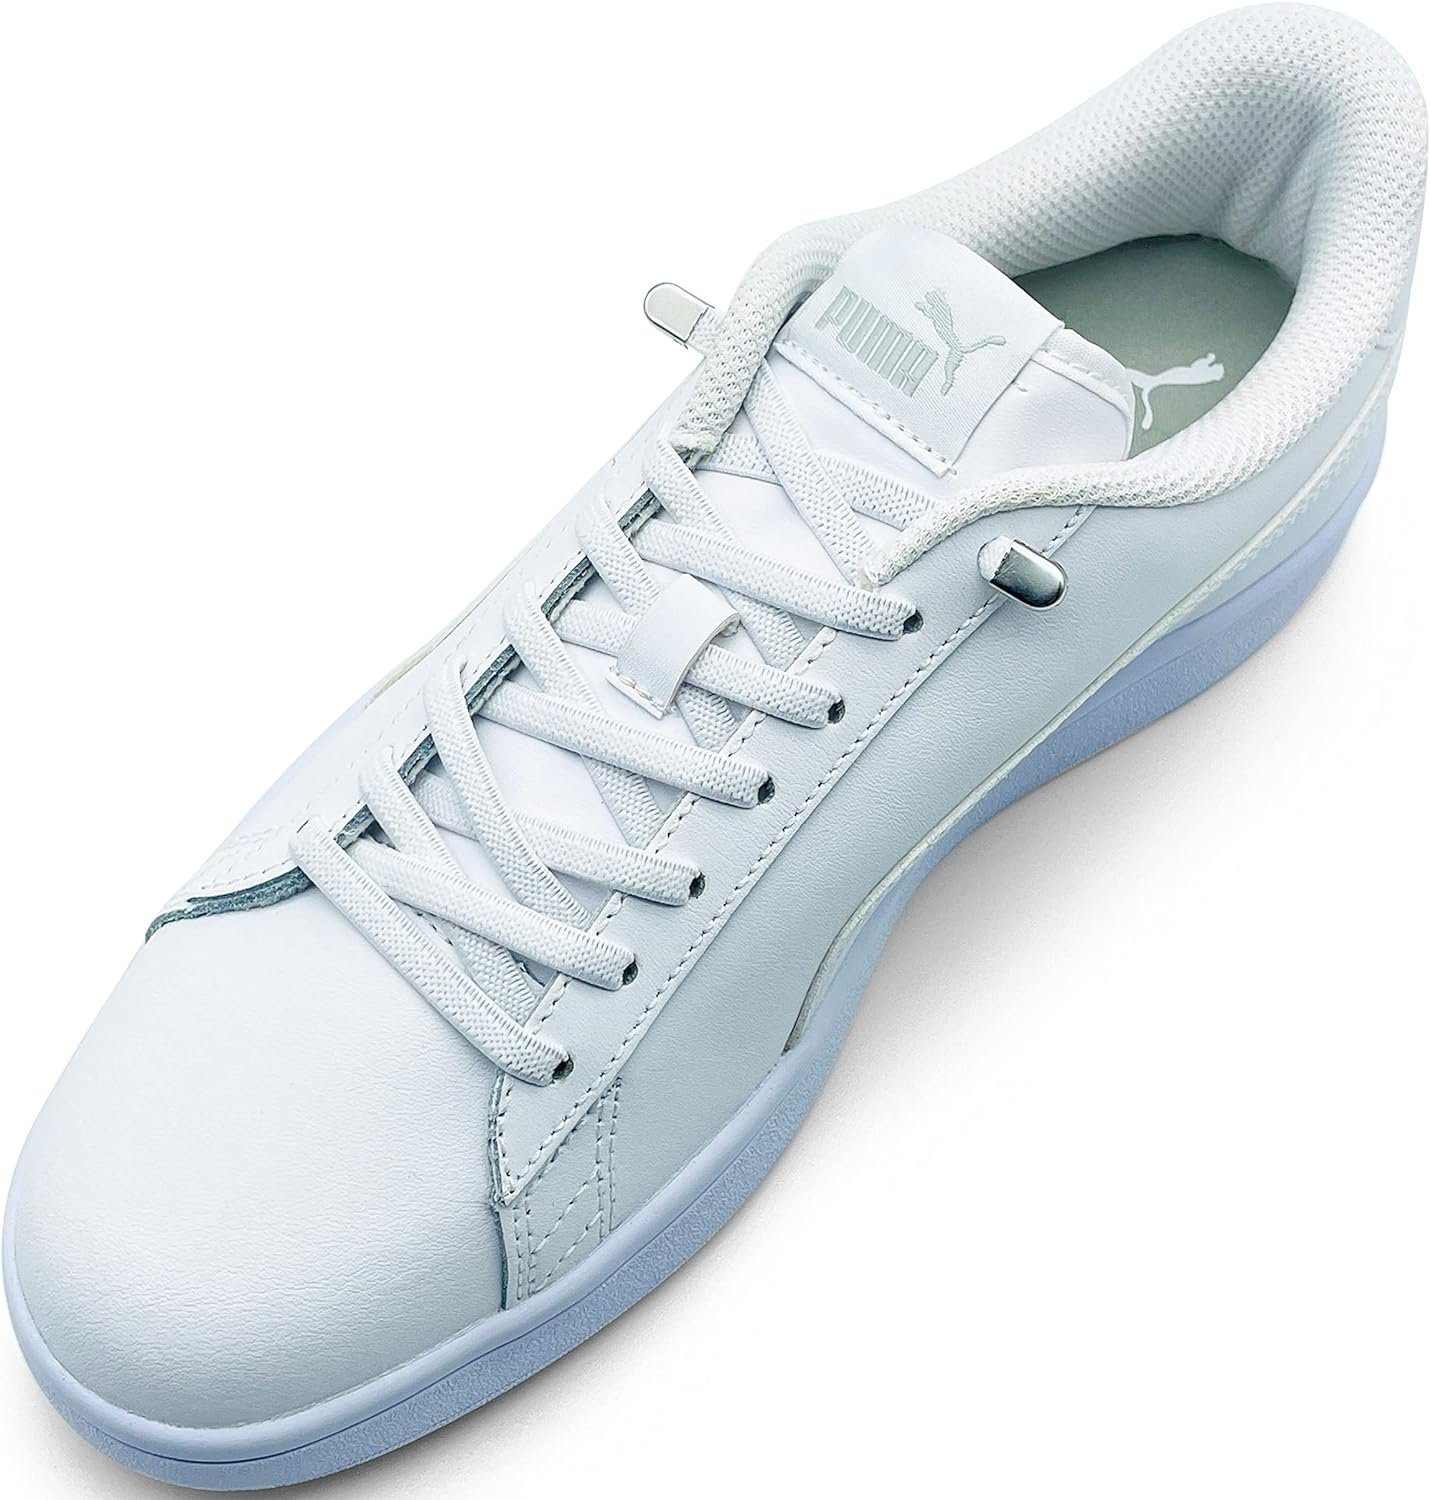 ELANOX Schnürsenkel 4 Stück für 2 Paar Schuhe elastische Schnürsenkel mit Clips, inkl. Enden (Clips) - 8 St. in silber weiss